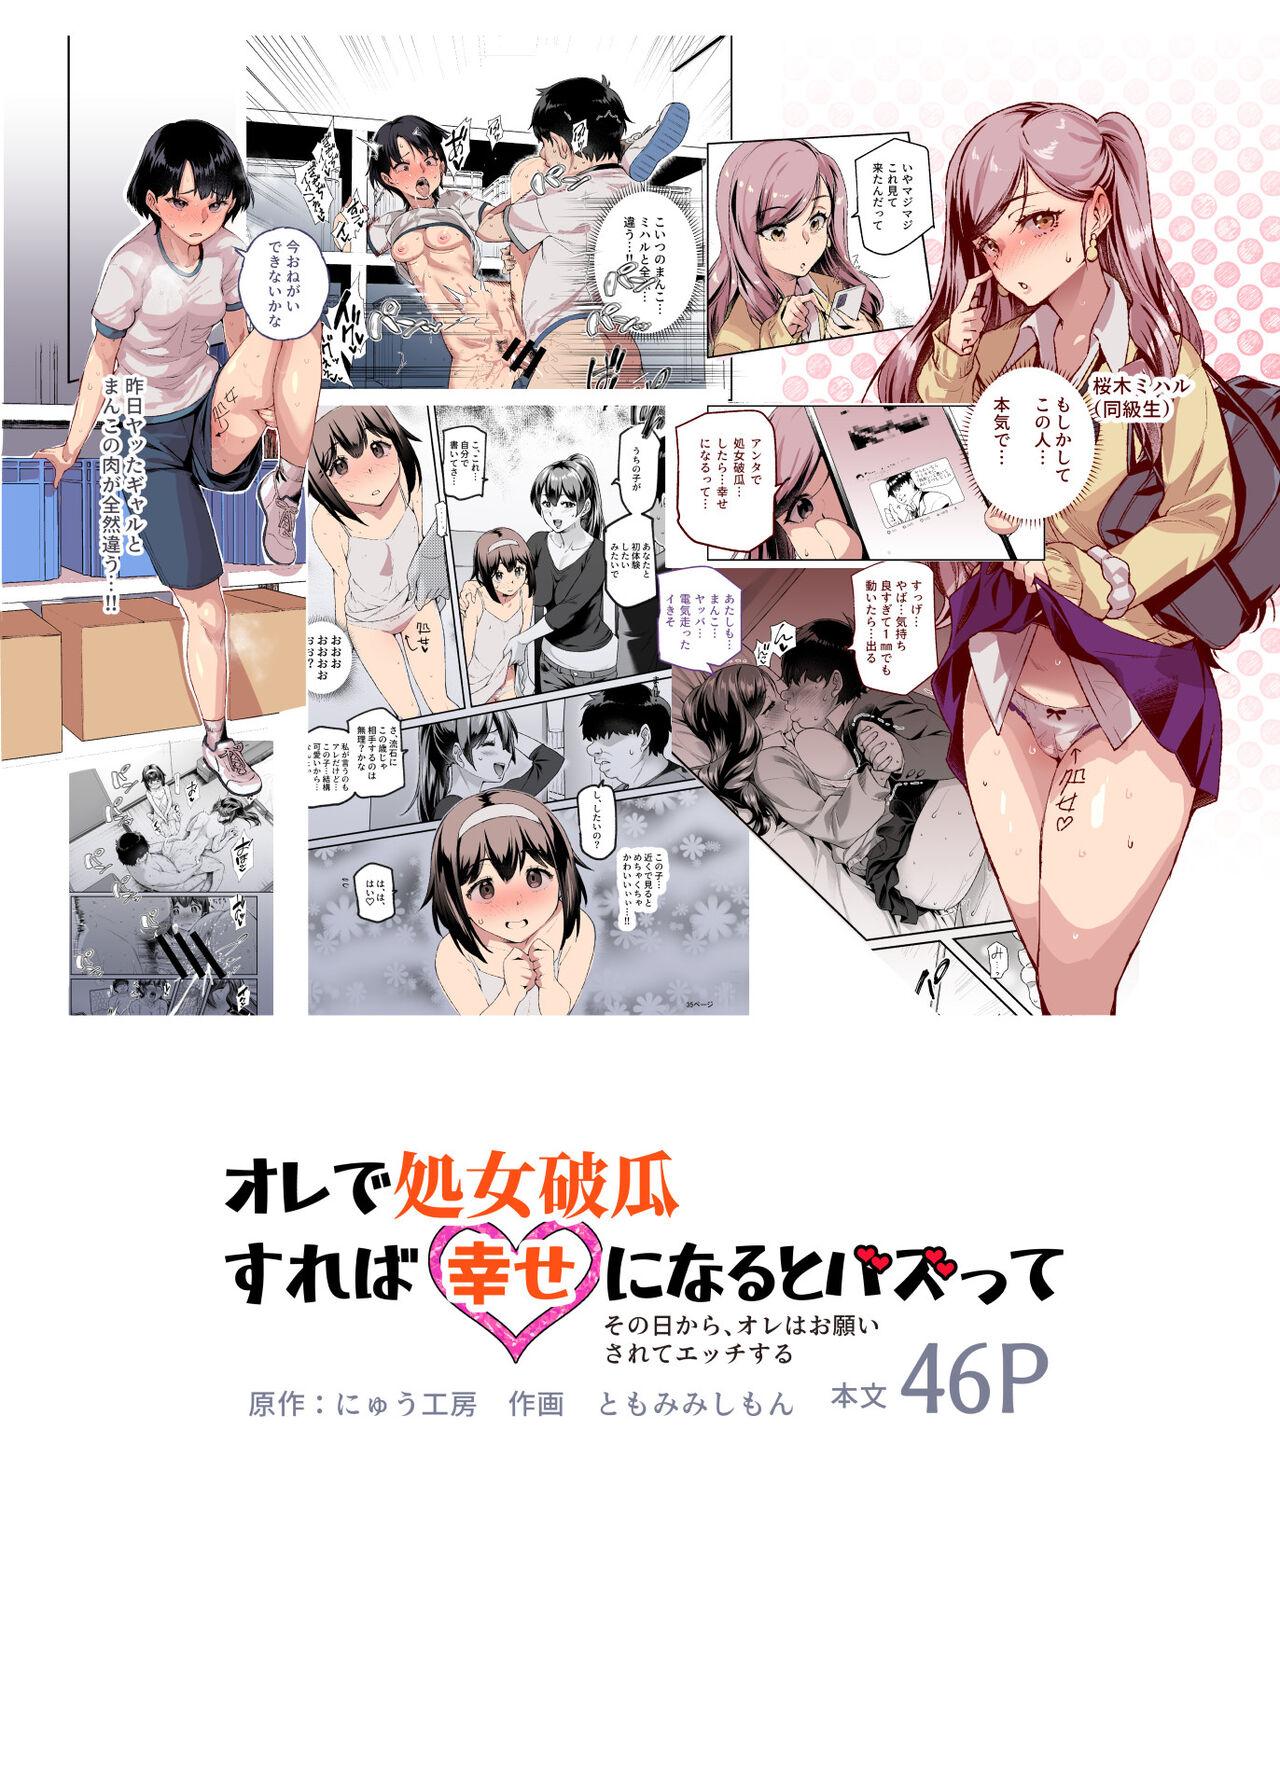 Older Ore de Shojohaka Sureba Shiawase ninaruto Bazzutte EX - Original Free Hard Core Porn - Page 2